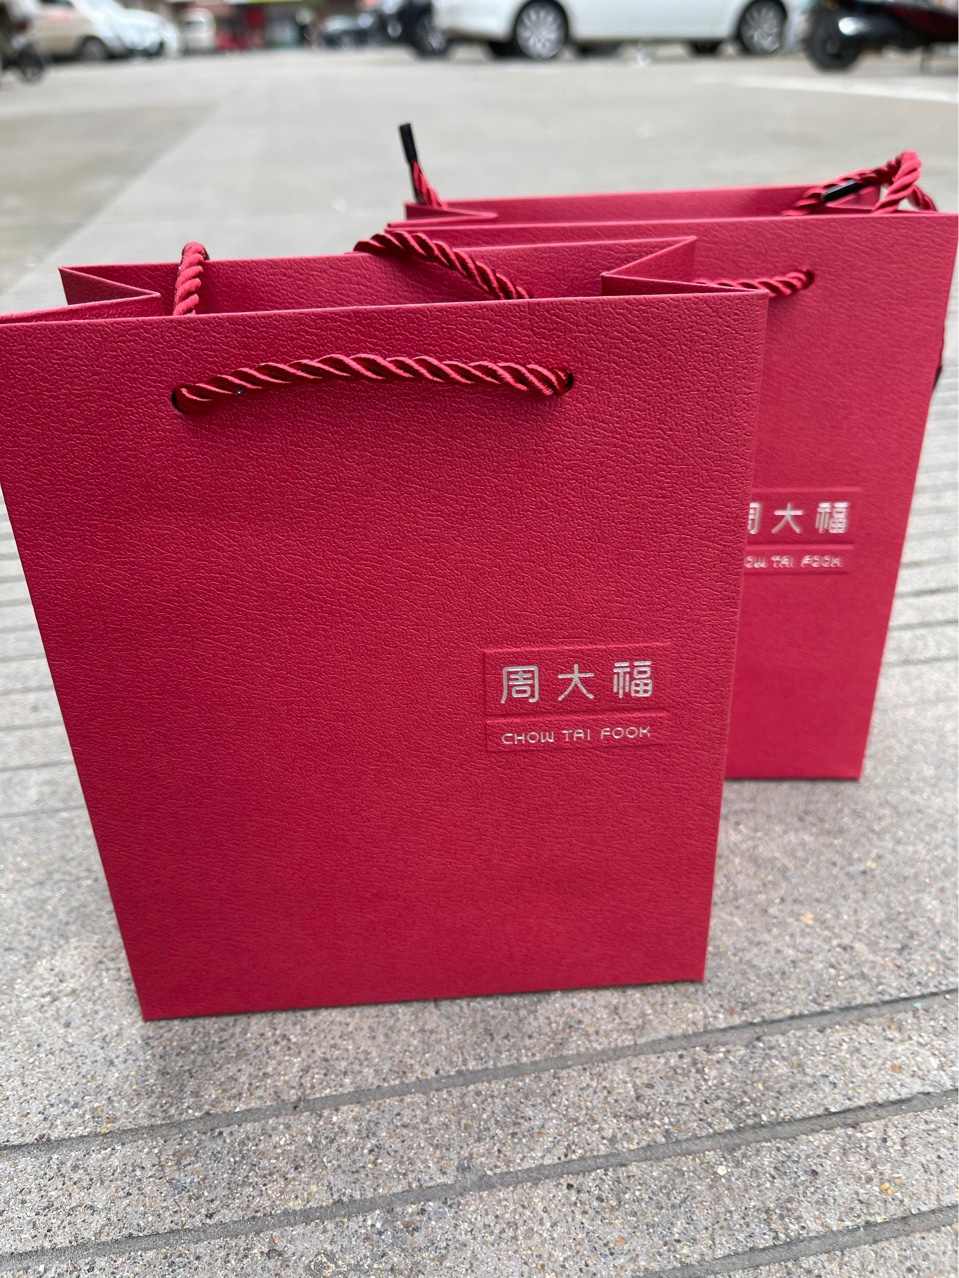 中国黄金包装袋图片